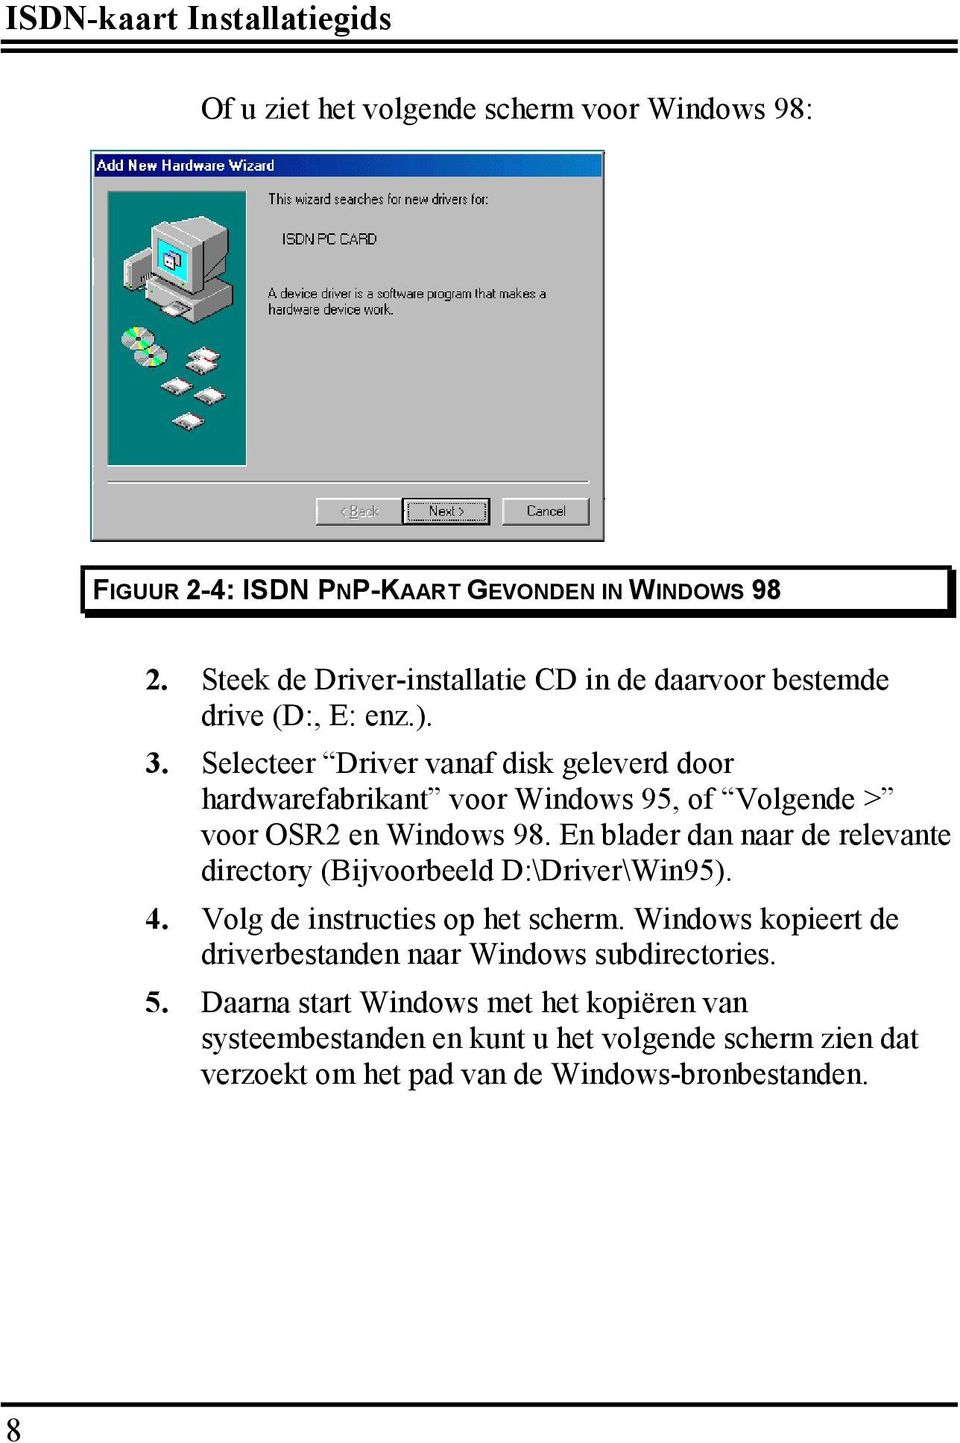 Selecteer Driver vanaf disk geleverd door hardwarefabrikant voor Windows 95, of Volgende > voor OSR2 en Windows 98.